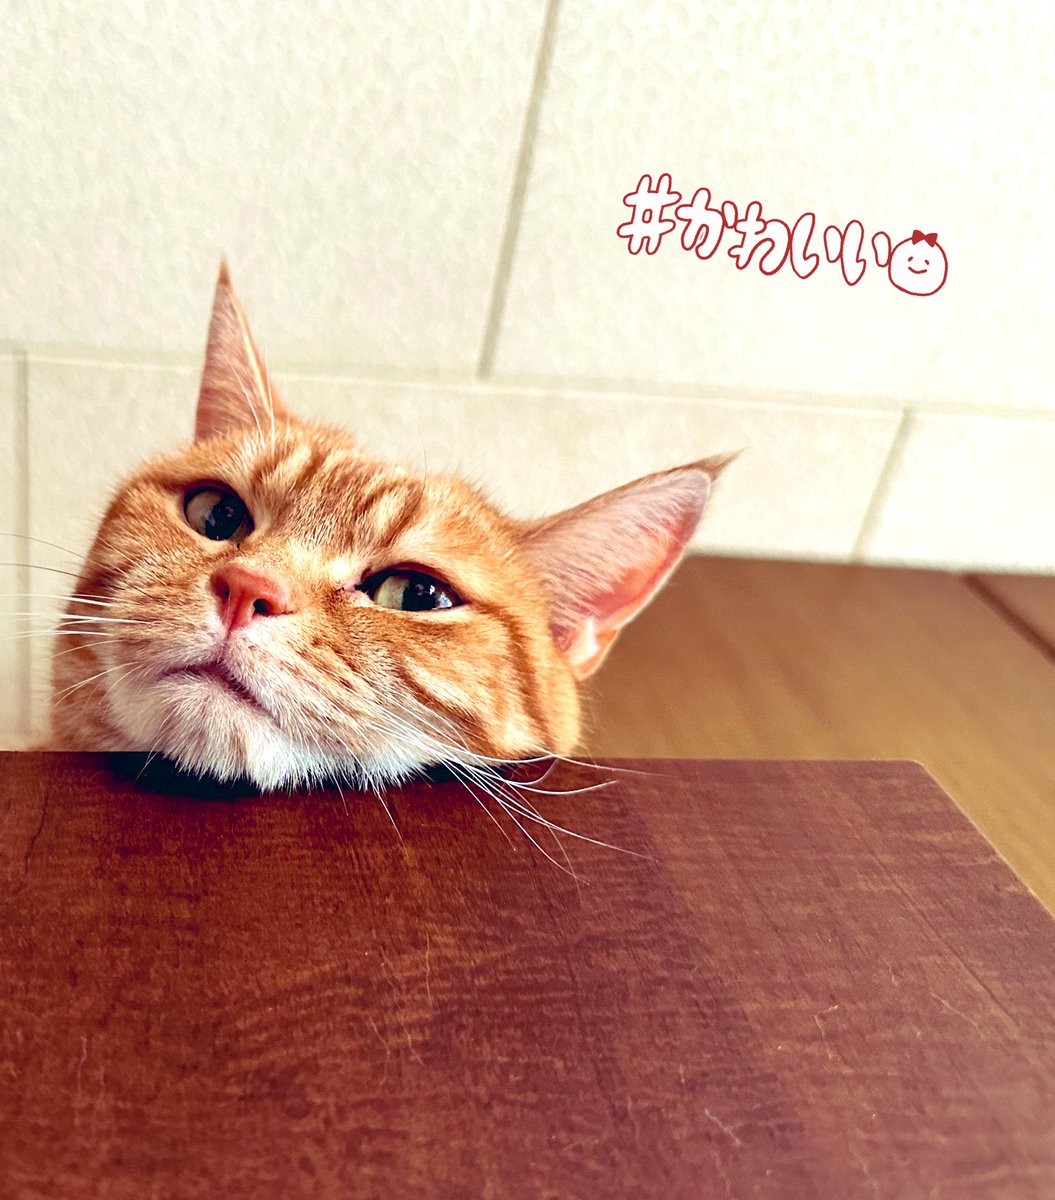 @ecovacs_japan 素敵なキャンペーンありがとうございます！！！

にゃんずの抜け毛すごいので
ご縁があったら泣いて喜びます😭❤️

#8月8日は #世界猫の日😻
#DEEBOTT20OMNI